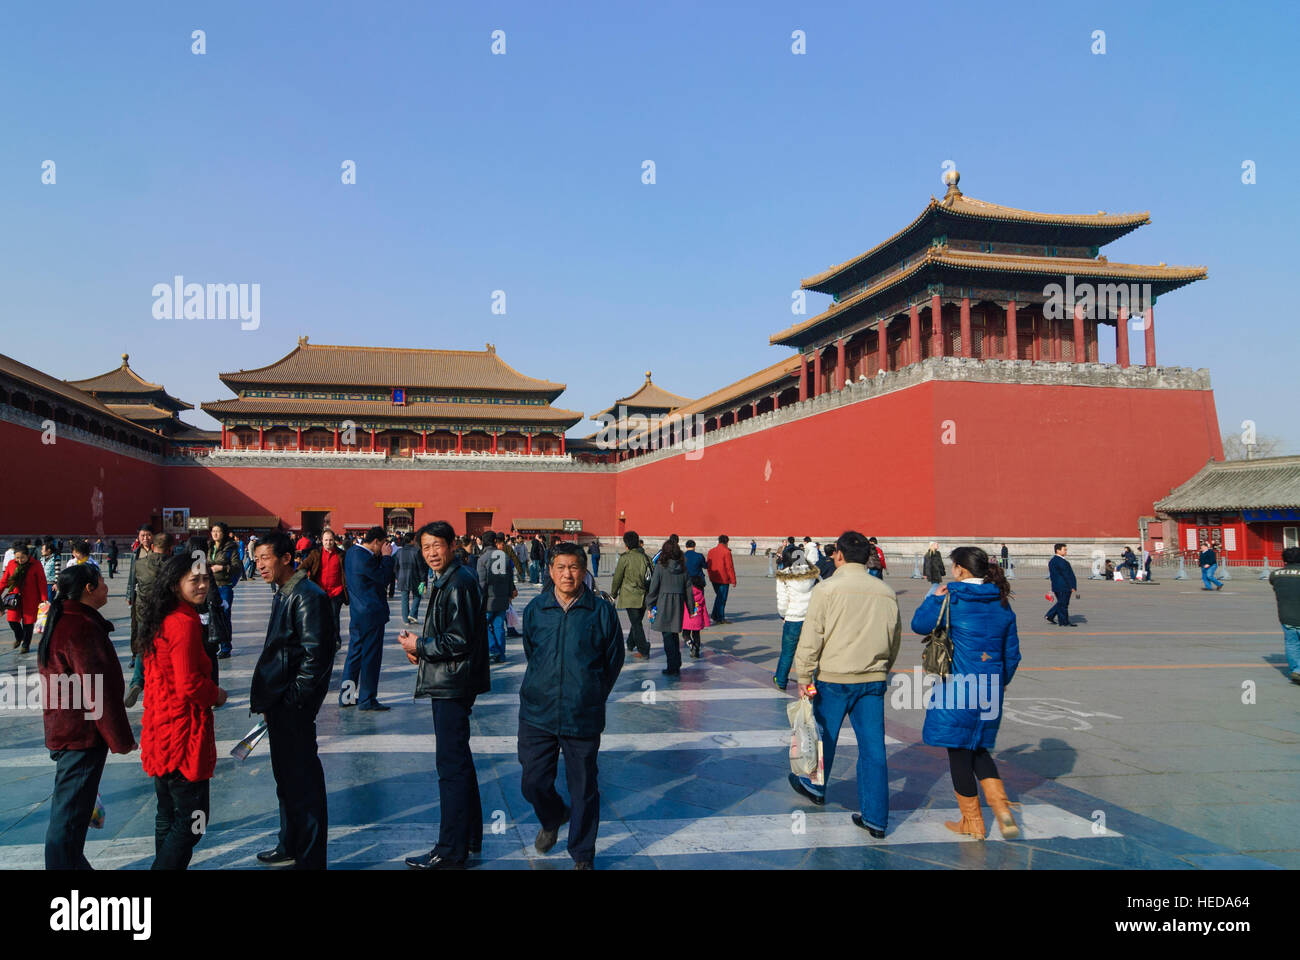 Pékin : la Cité Interdite (palais impérial) ; midi gate, Beijing, Chine Banque D'Images